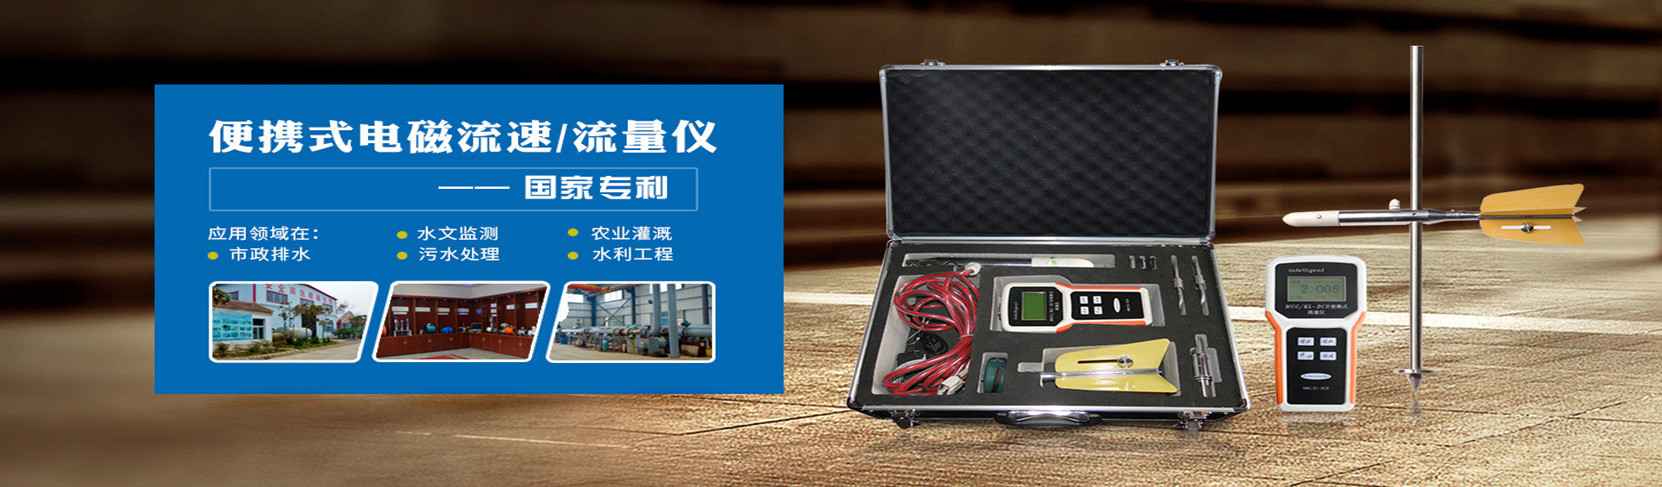 大屏显示控制仪钢水测温仪的安装与接线新疆流量计厂家为您分析​